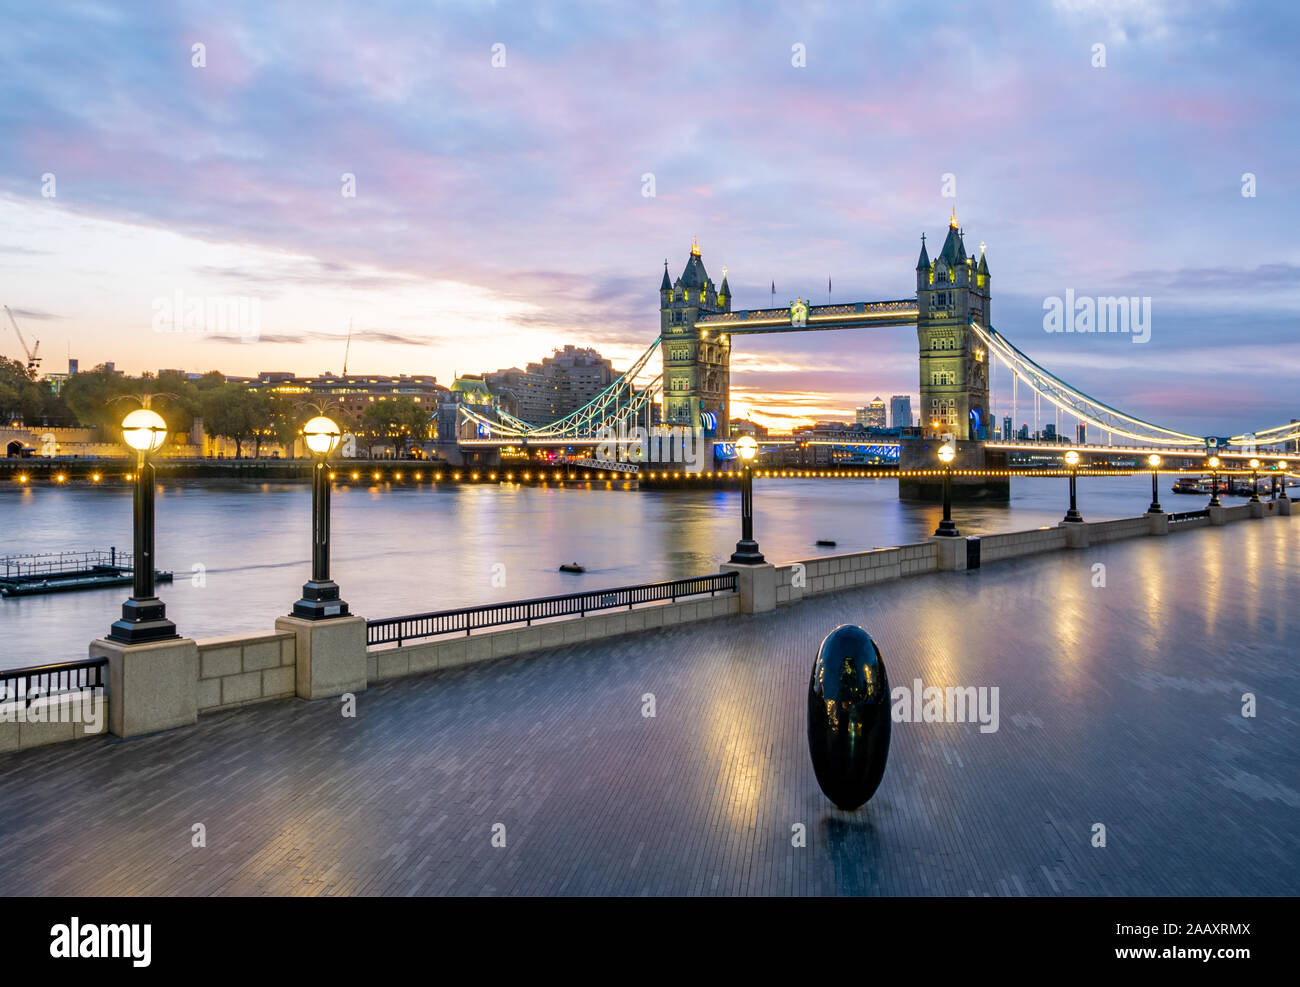 Londres, Angleterre, Grande-Bretagne - le 29 octobre 2019 : More London Riverside de Southbank avec le célèbre Tower Bridge de l'autre côté de la rivière Thames au début de t Banque D'Images